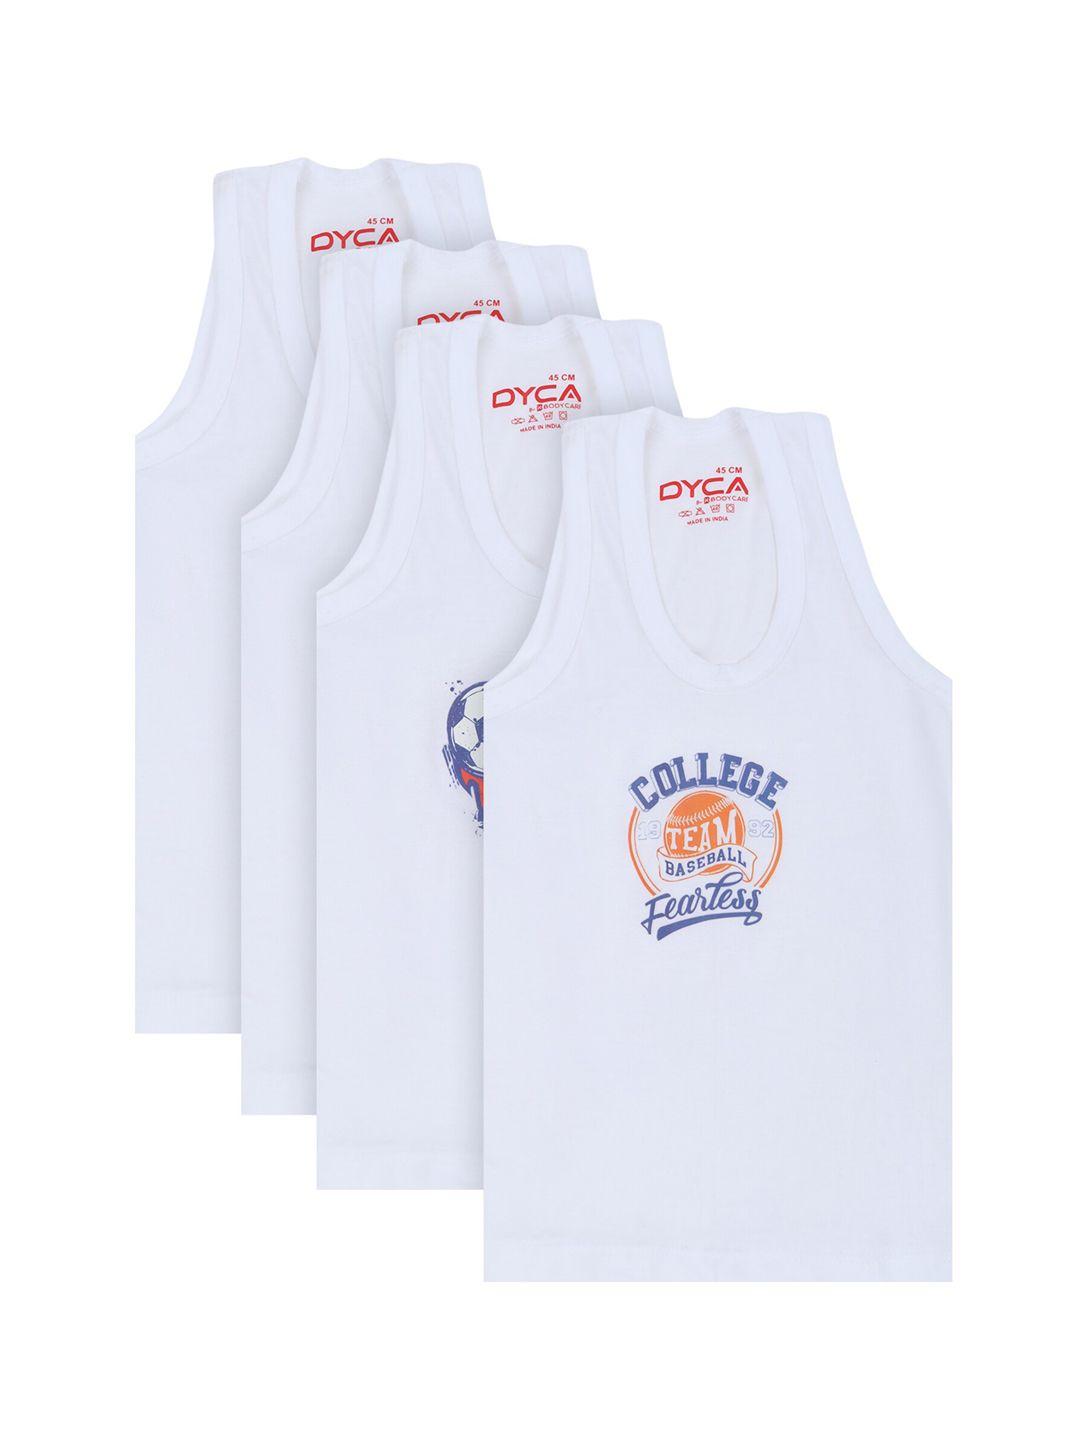 dyca-kids-boys-pack-of-4-white-printed-innerwear-vests